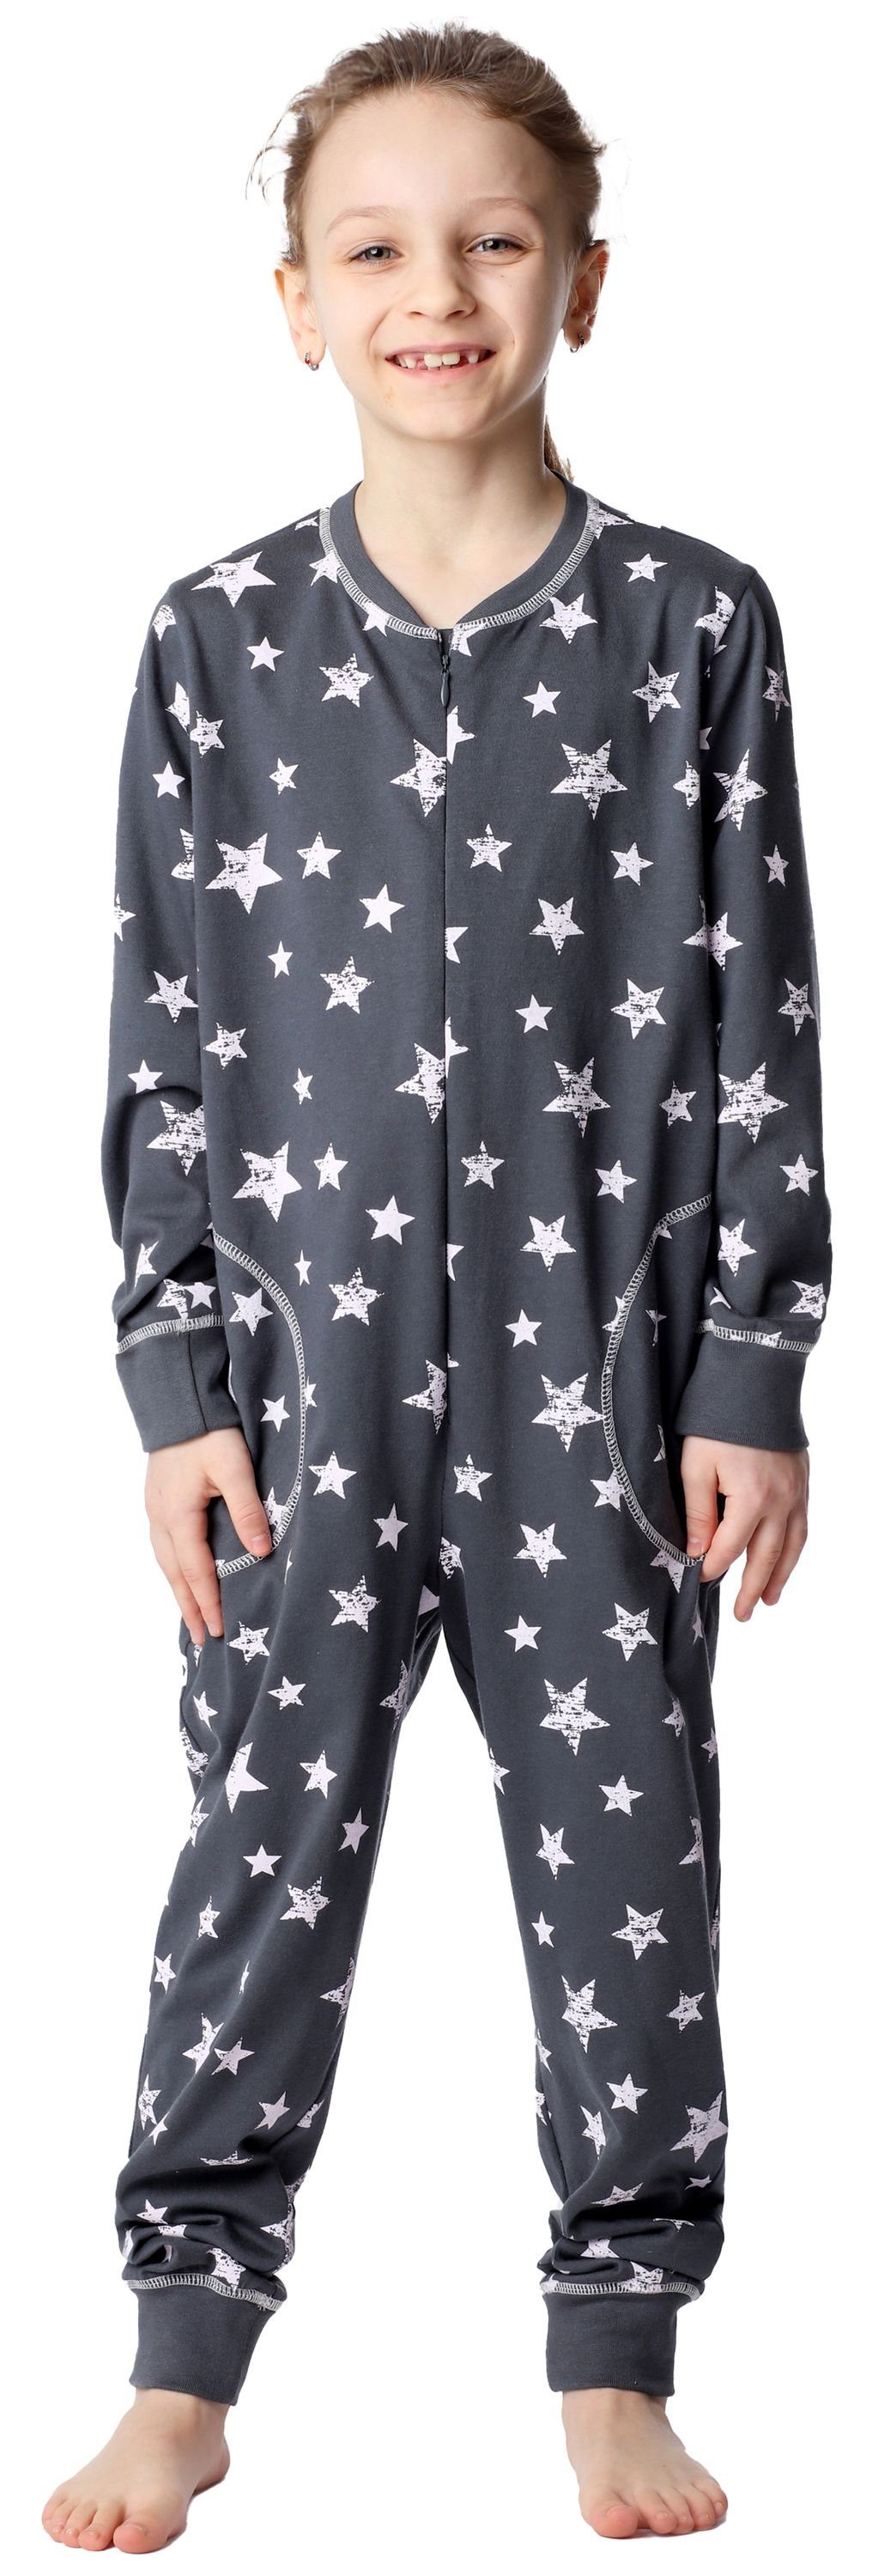 Merry Style Schlafanzug Mädchen Schlafanzug Jumpsuit MS10-186 Grau Rosa Sterne